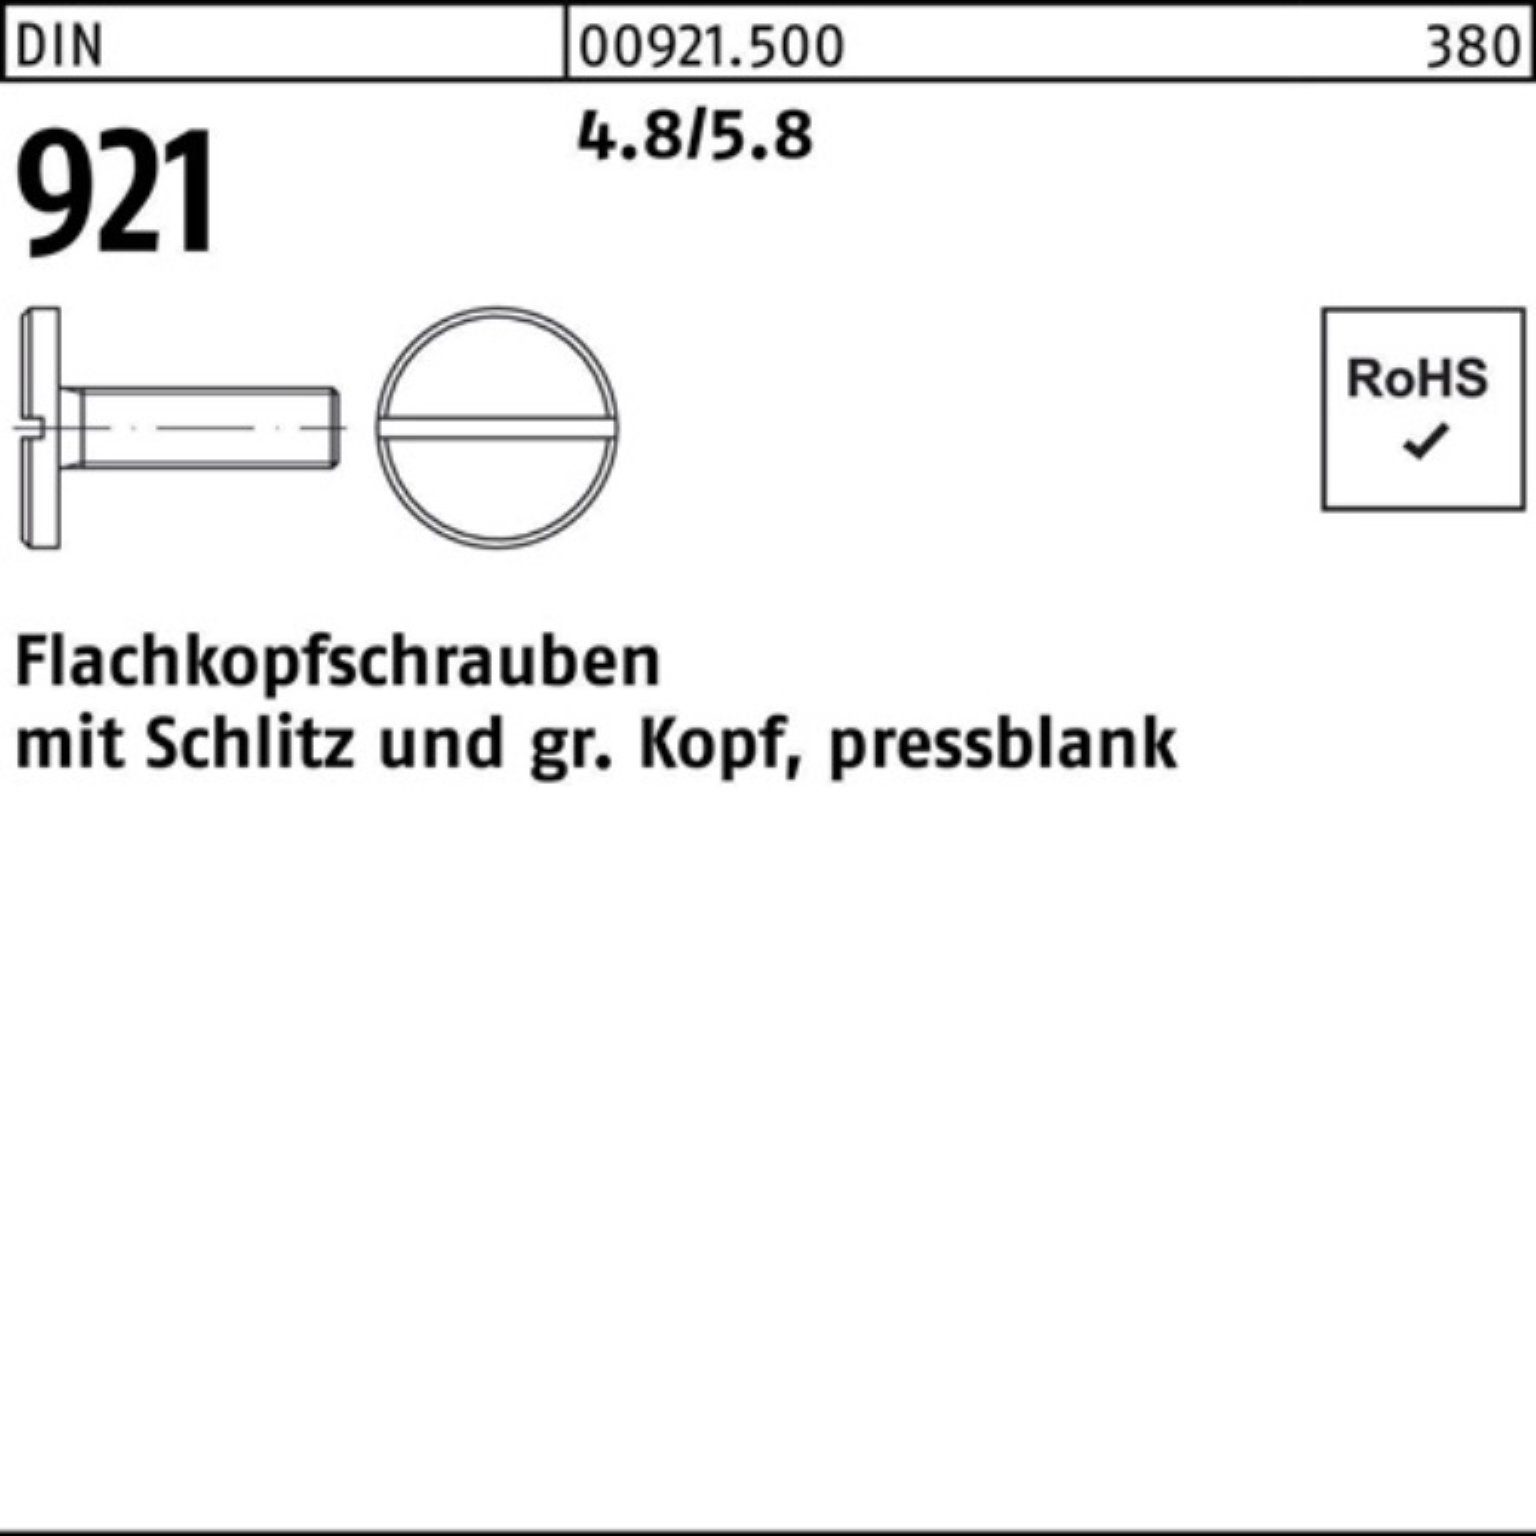 Reyher Schraube 100er Pack Flachkopfschraube DIN 921 Schlitz M8x 10 4.8/5.8 100 Stück